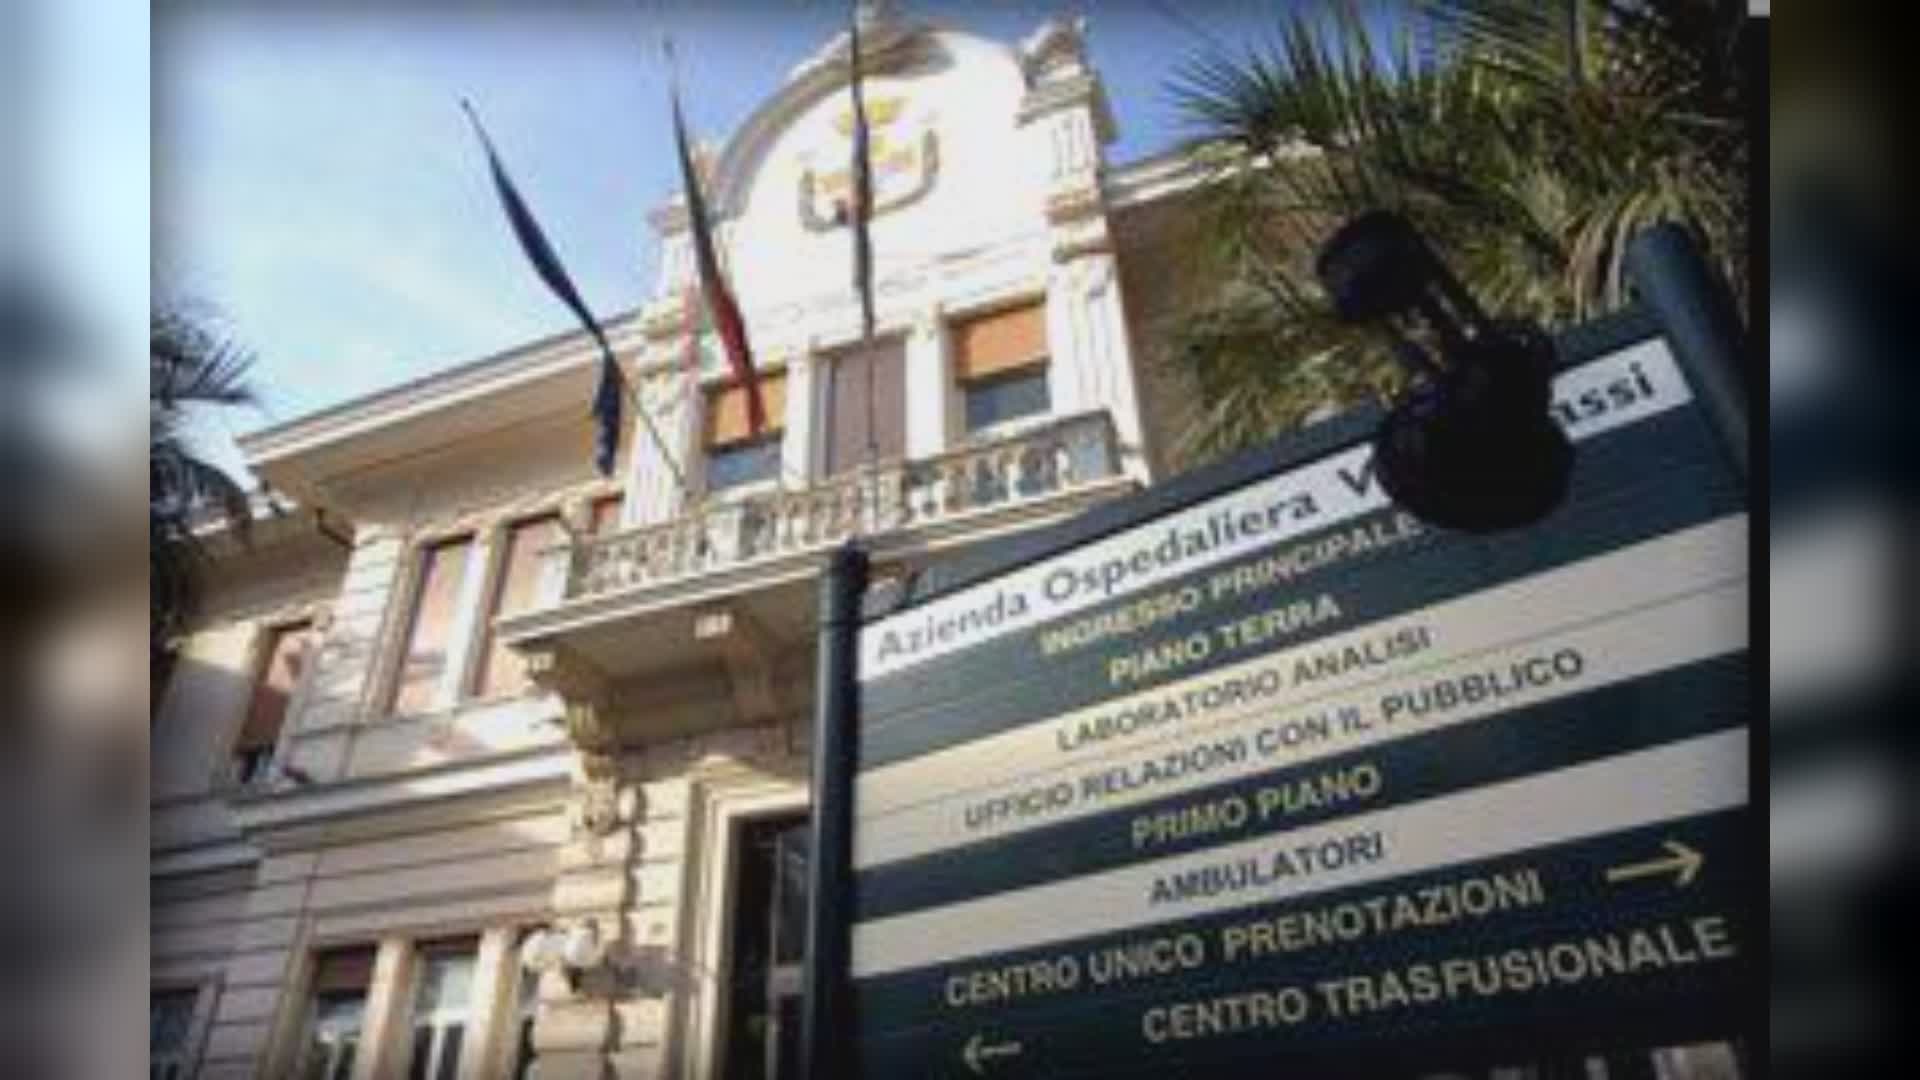 Genova, i sindacati: a rischio il centro trasfusionale del Villa Scassi. L'assessore Gratarola: "Non è vero"